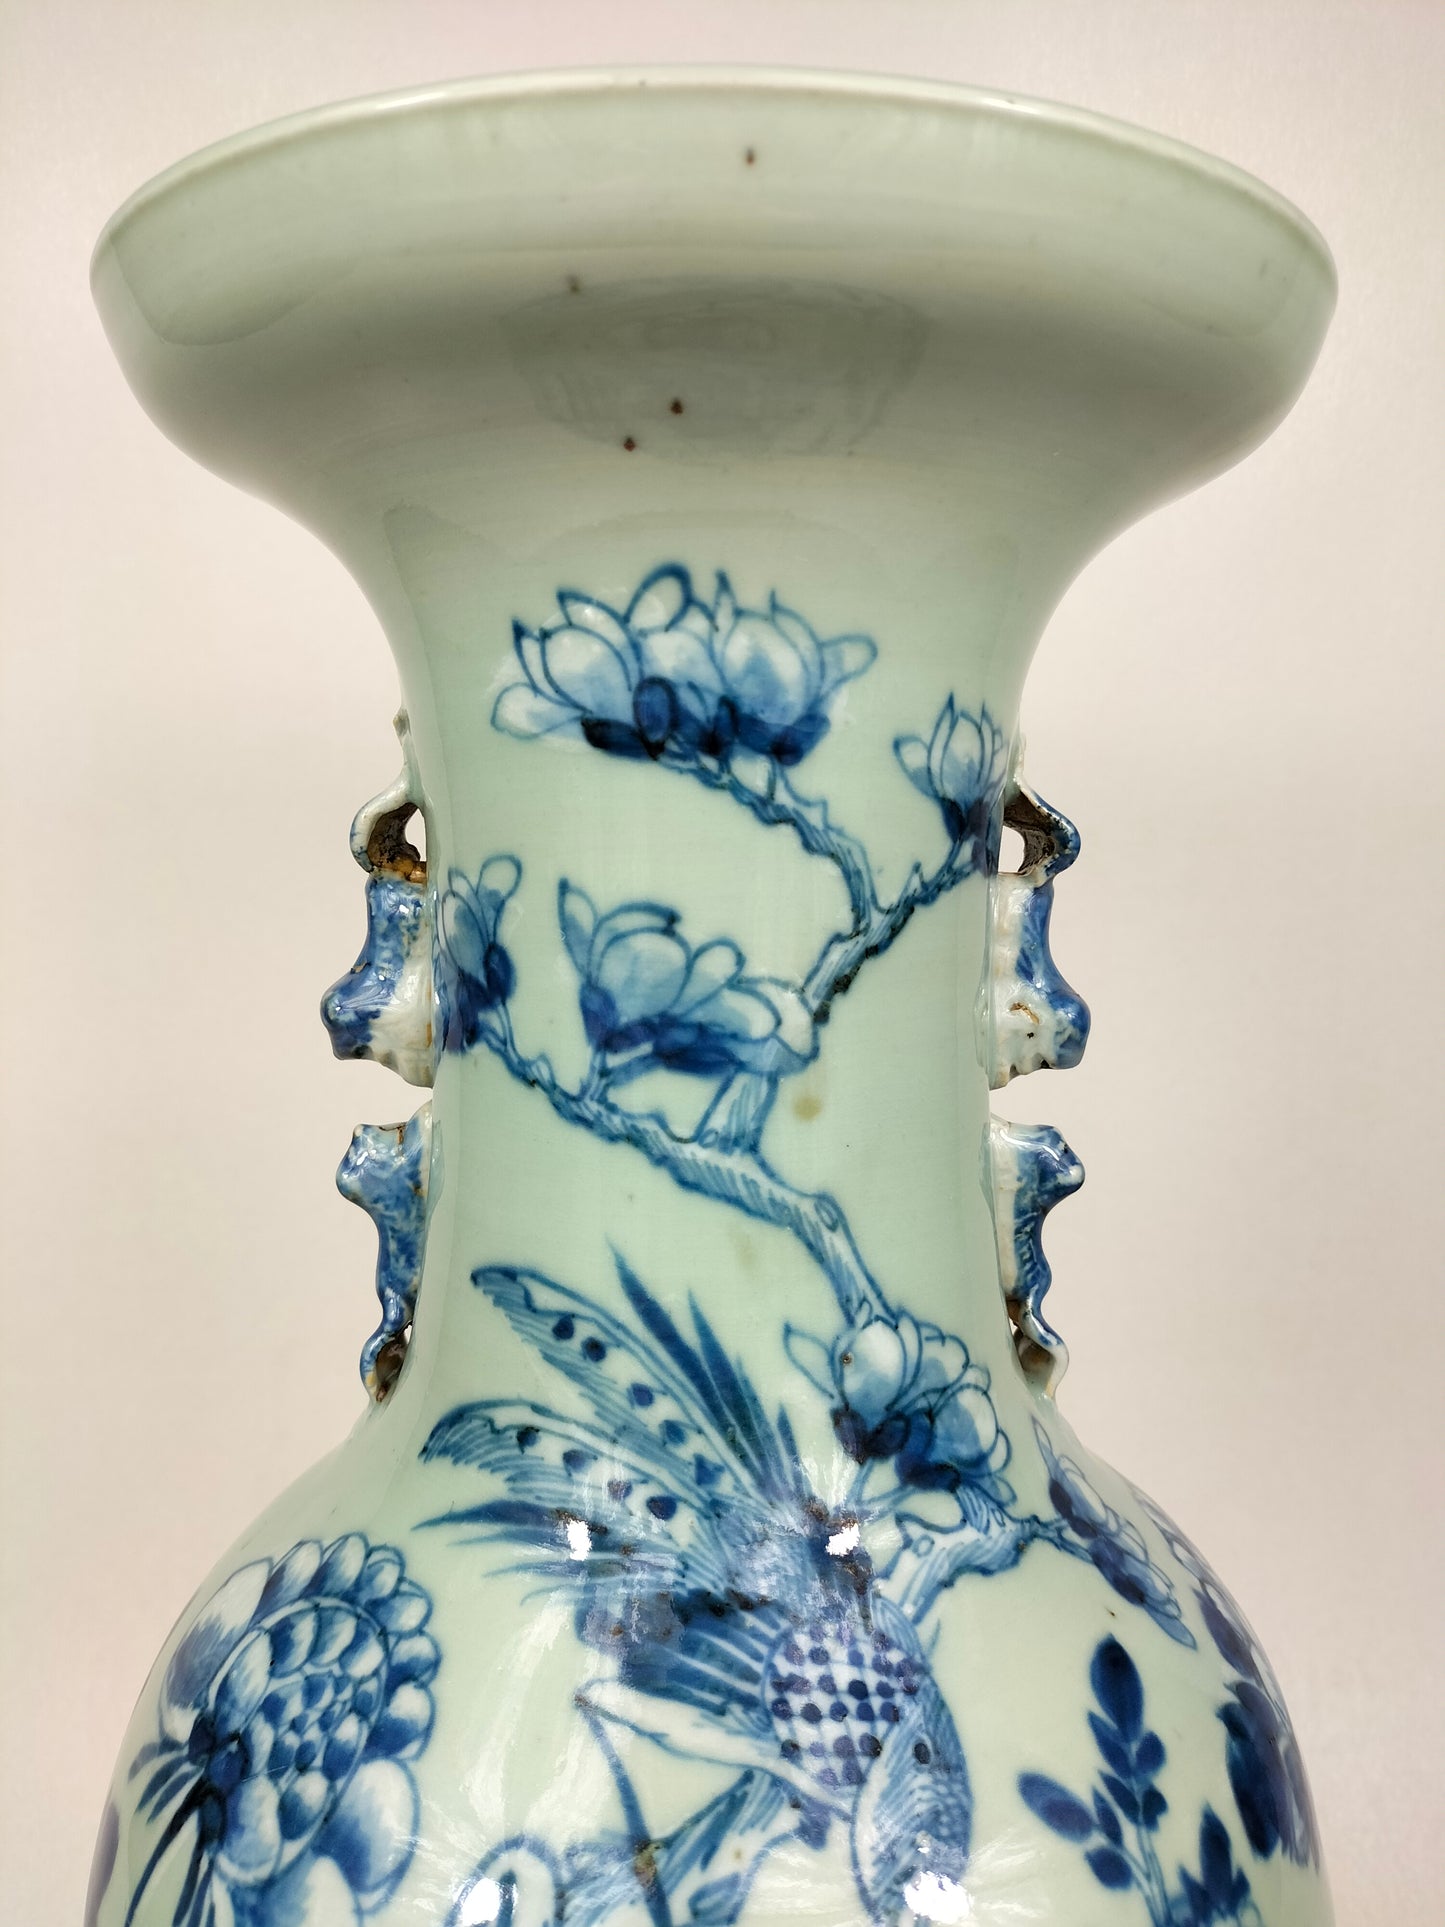 Pasu celadon Cina antik besar dihiasi dengan burung dan bunga // Dinasti Qing - abad ke-19